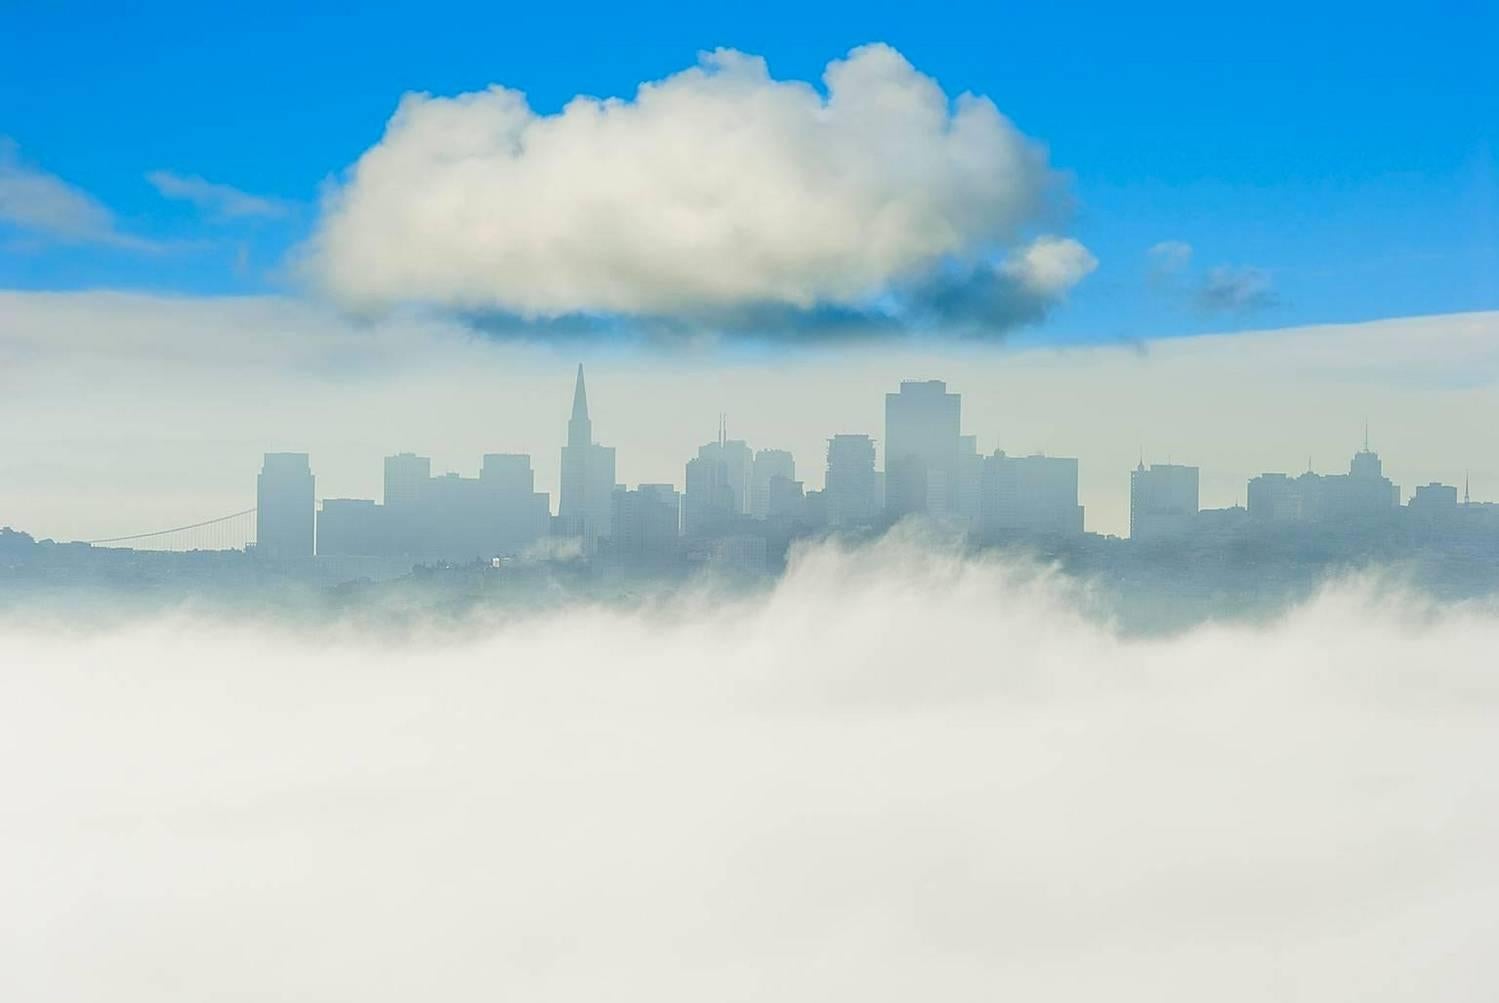 Mitchell Funk Landscape Photograph – San Francisco Skyline Blauer Himmel und eine große Wolke,  Landschaftsfotografie